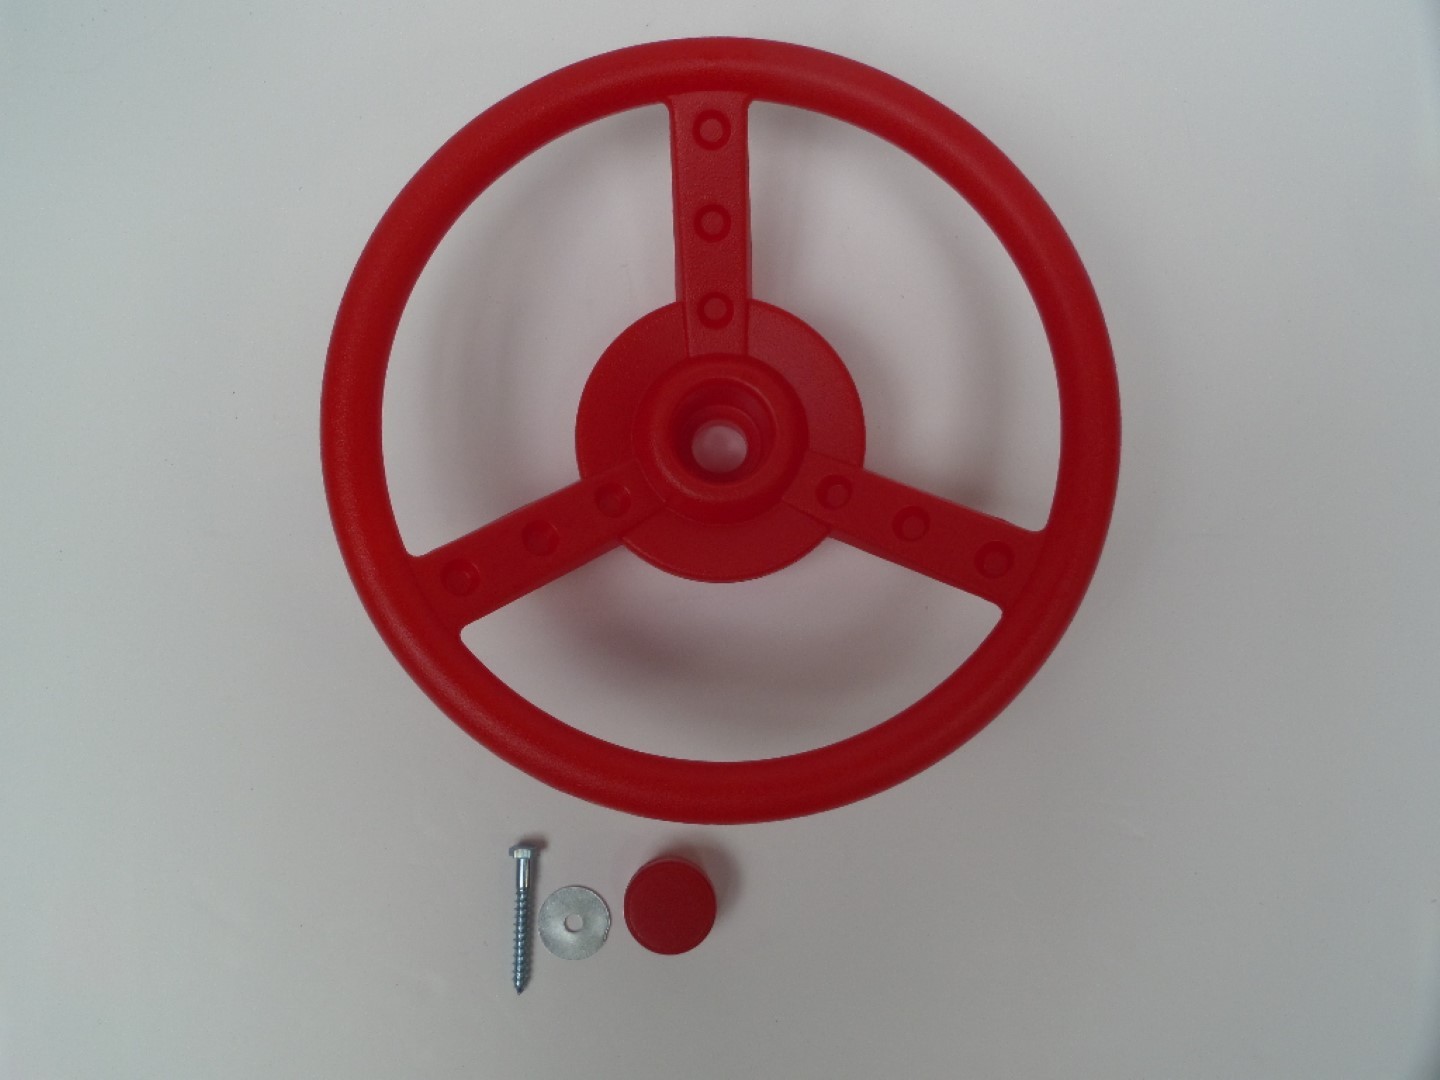 Stuur in kunststof diameter 300x81 mm incl. schroeven rood - Hermic